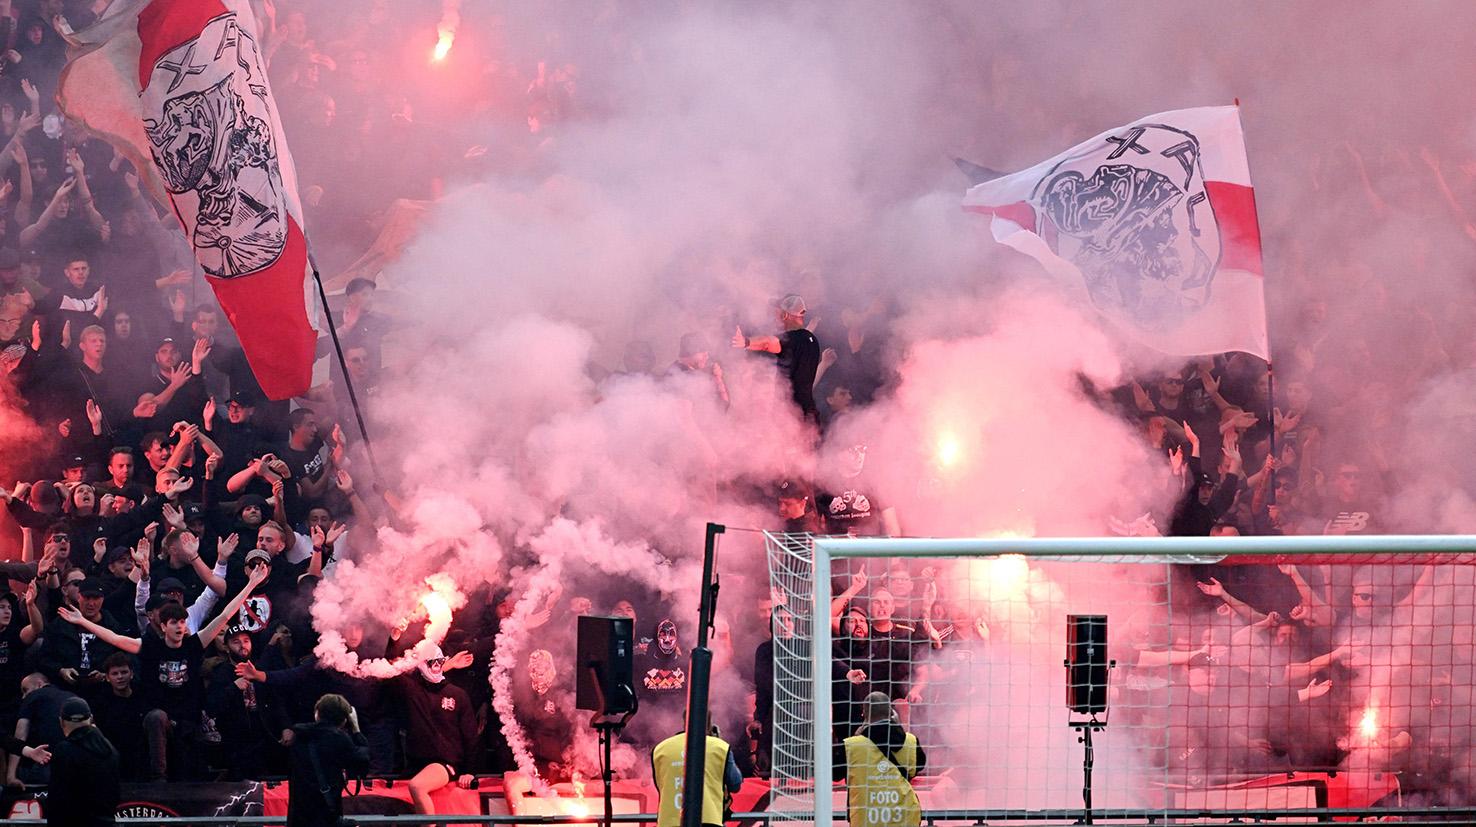 Ajax – Feyenoord